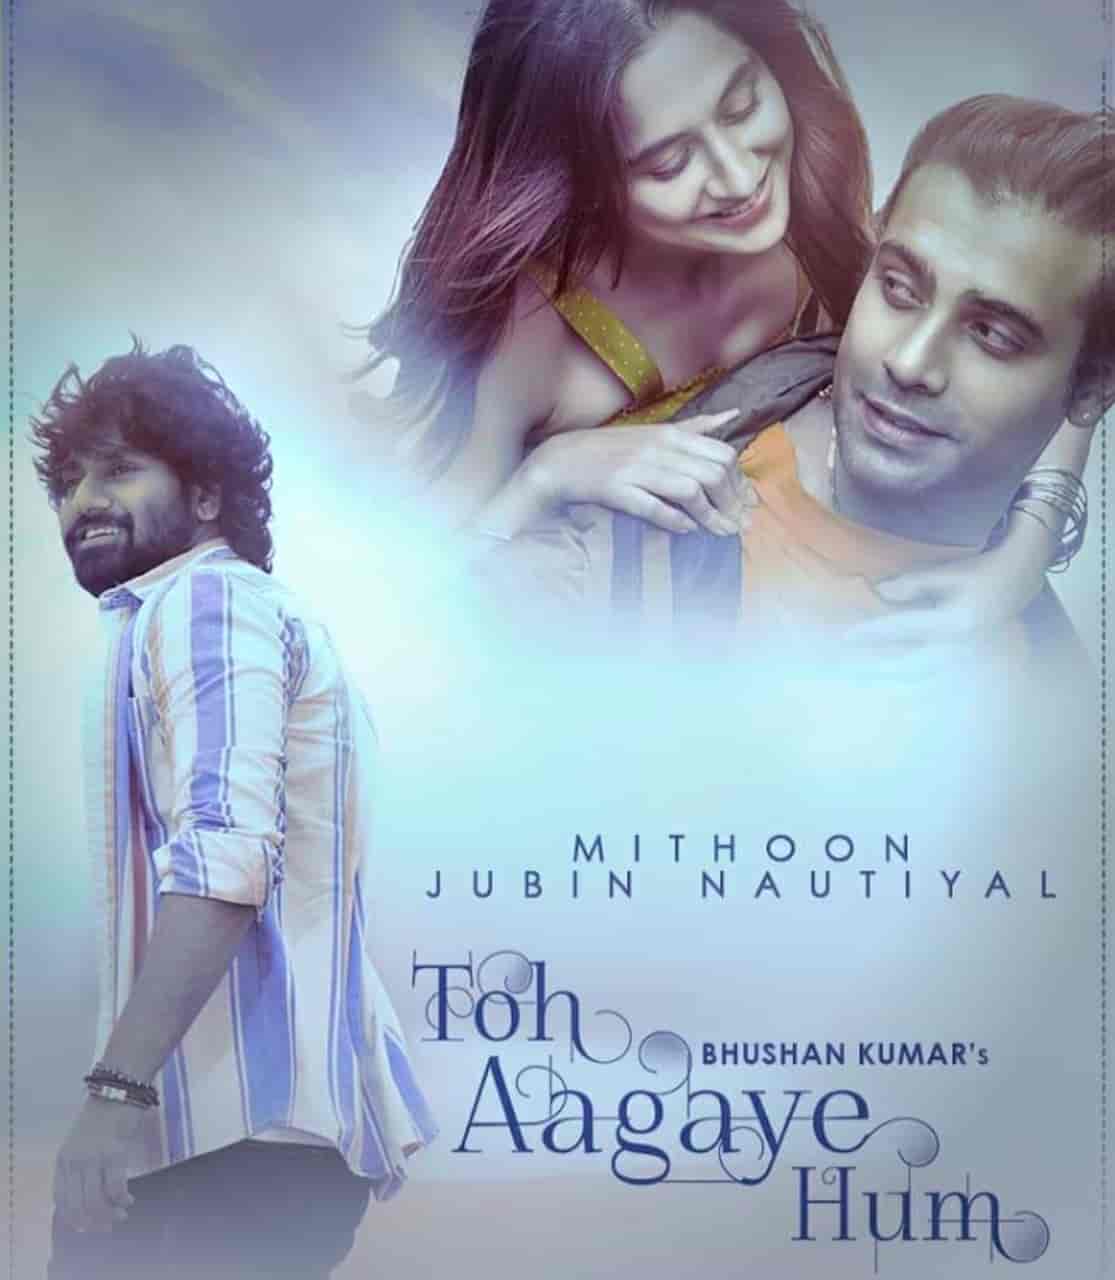 Toh Aagaye Hum Hindi Song Image Features Jubin Nautiyal And Sanjeeda Shaikh